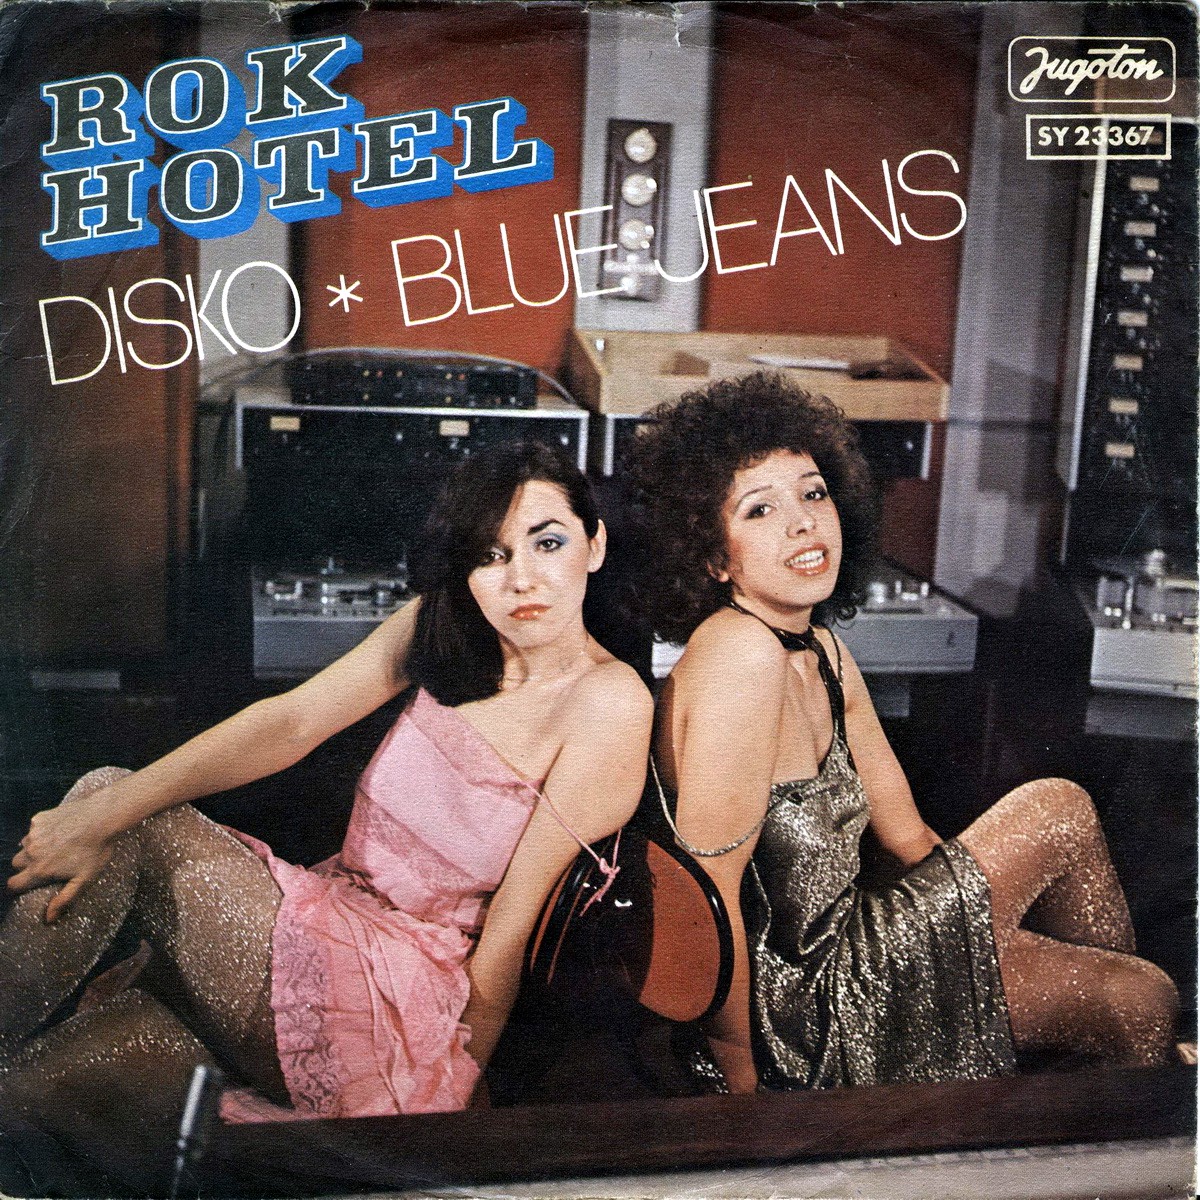 Rok Hotel 1978 Disko a